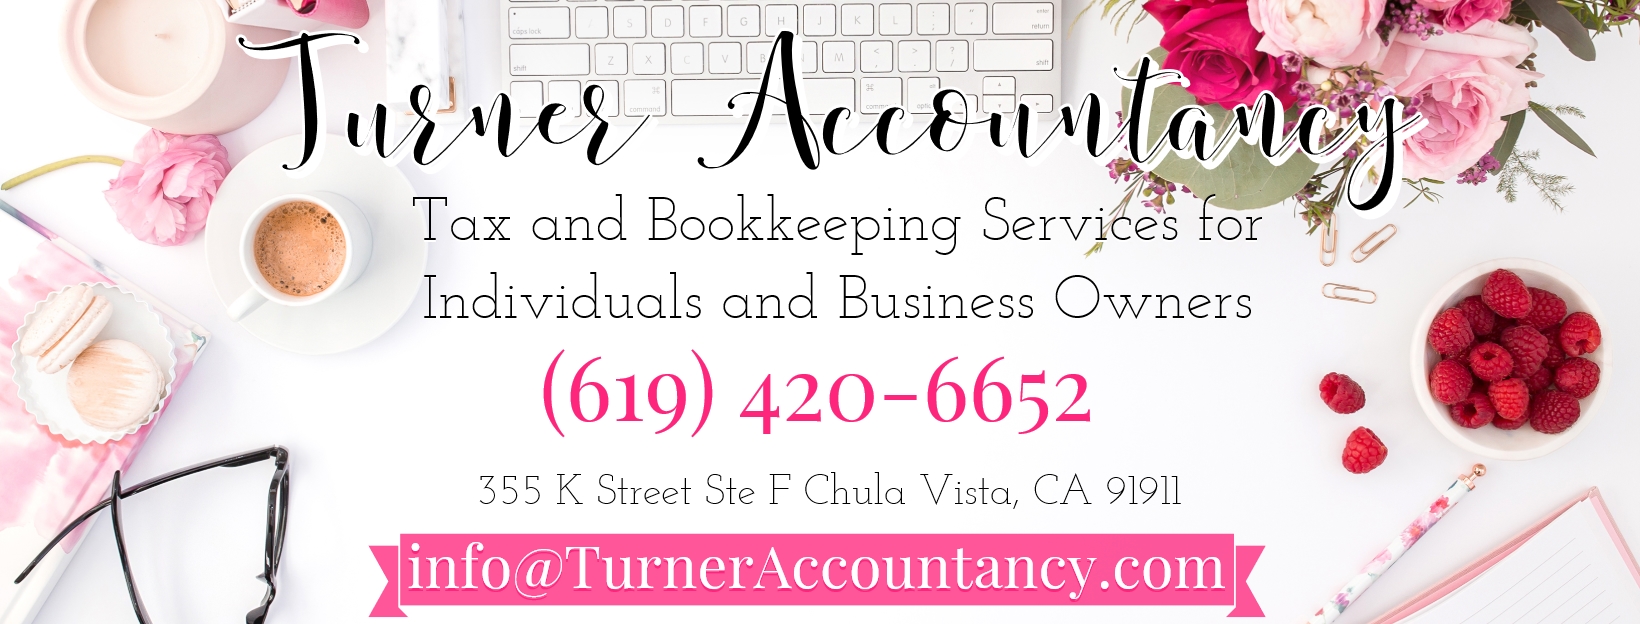 Turner Accountancy